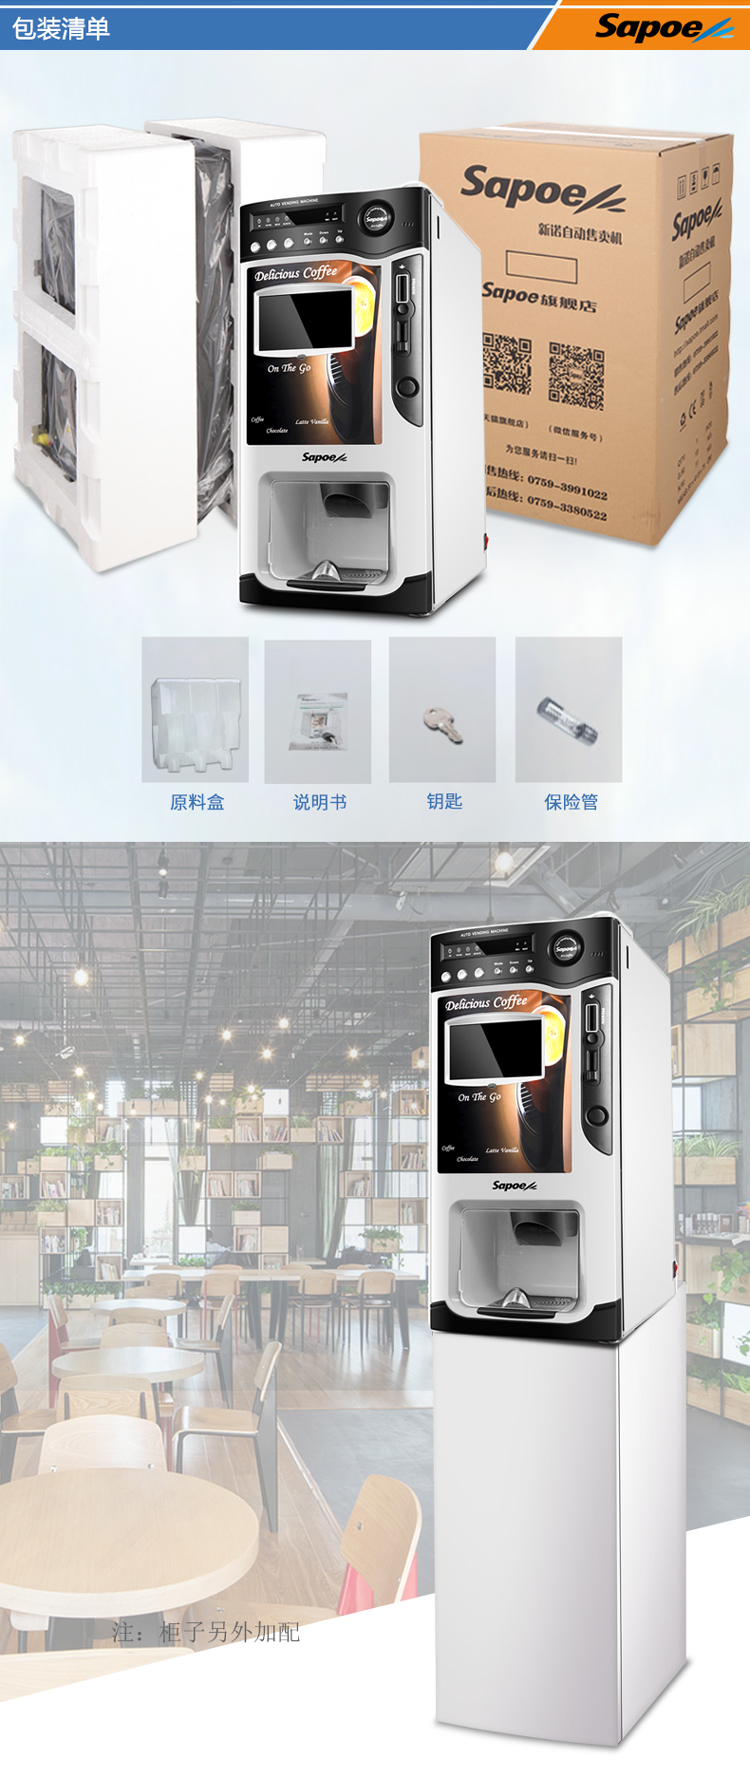 自动咖啡机SC-8703BD